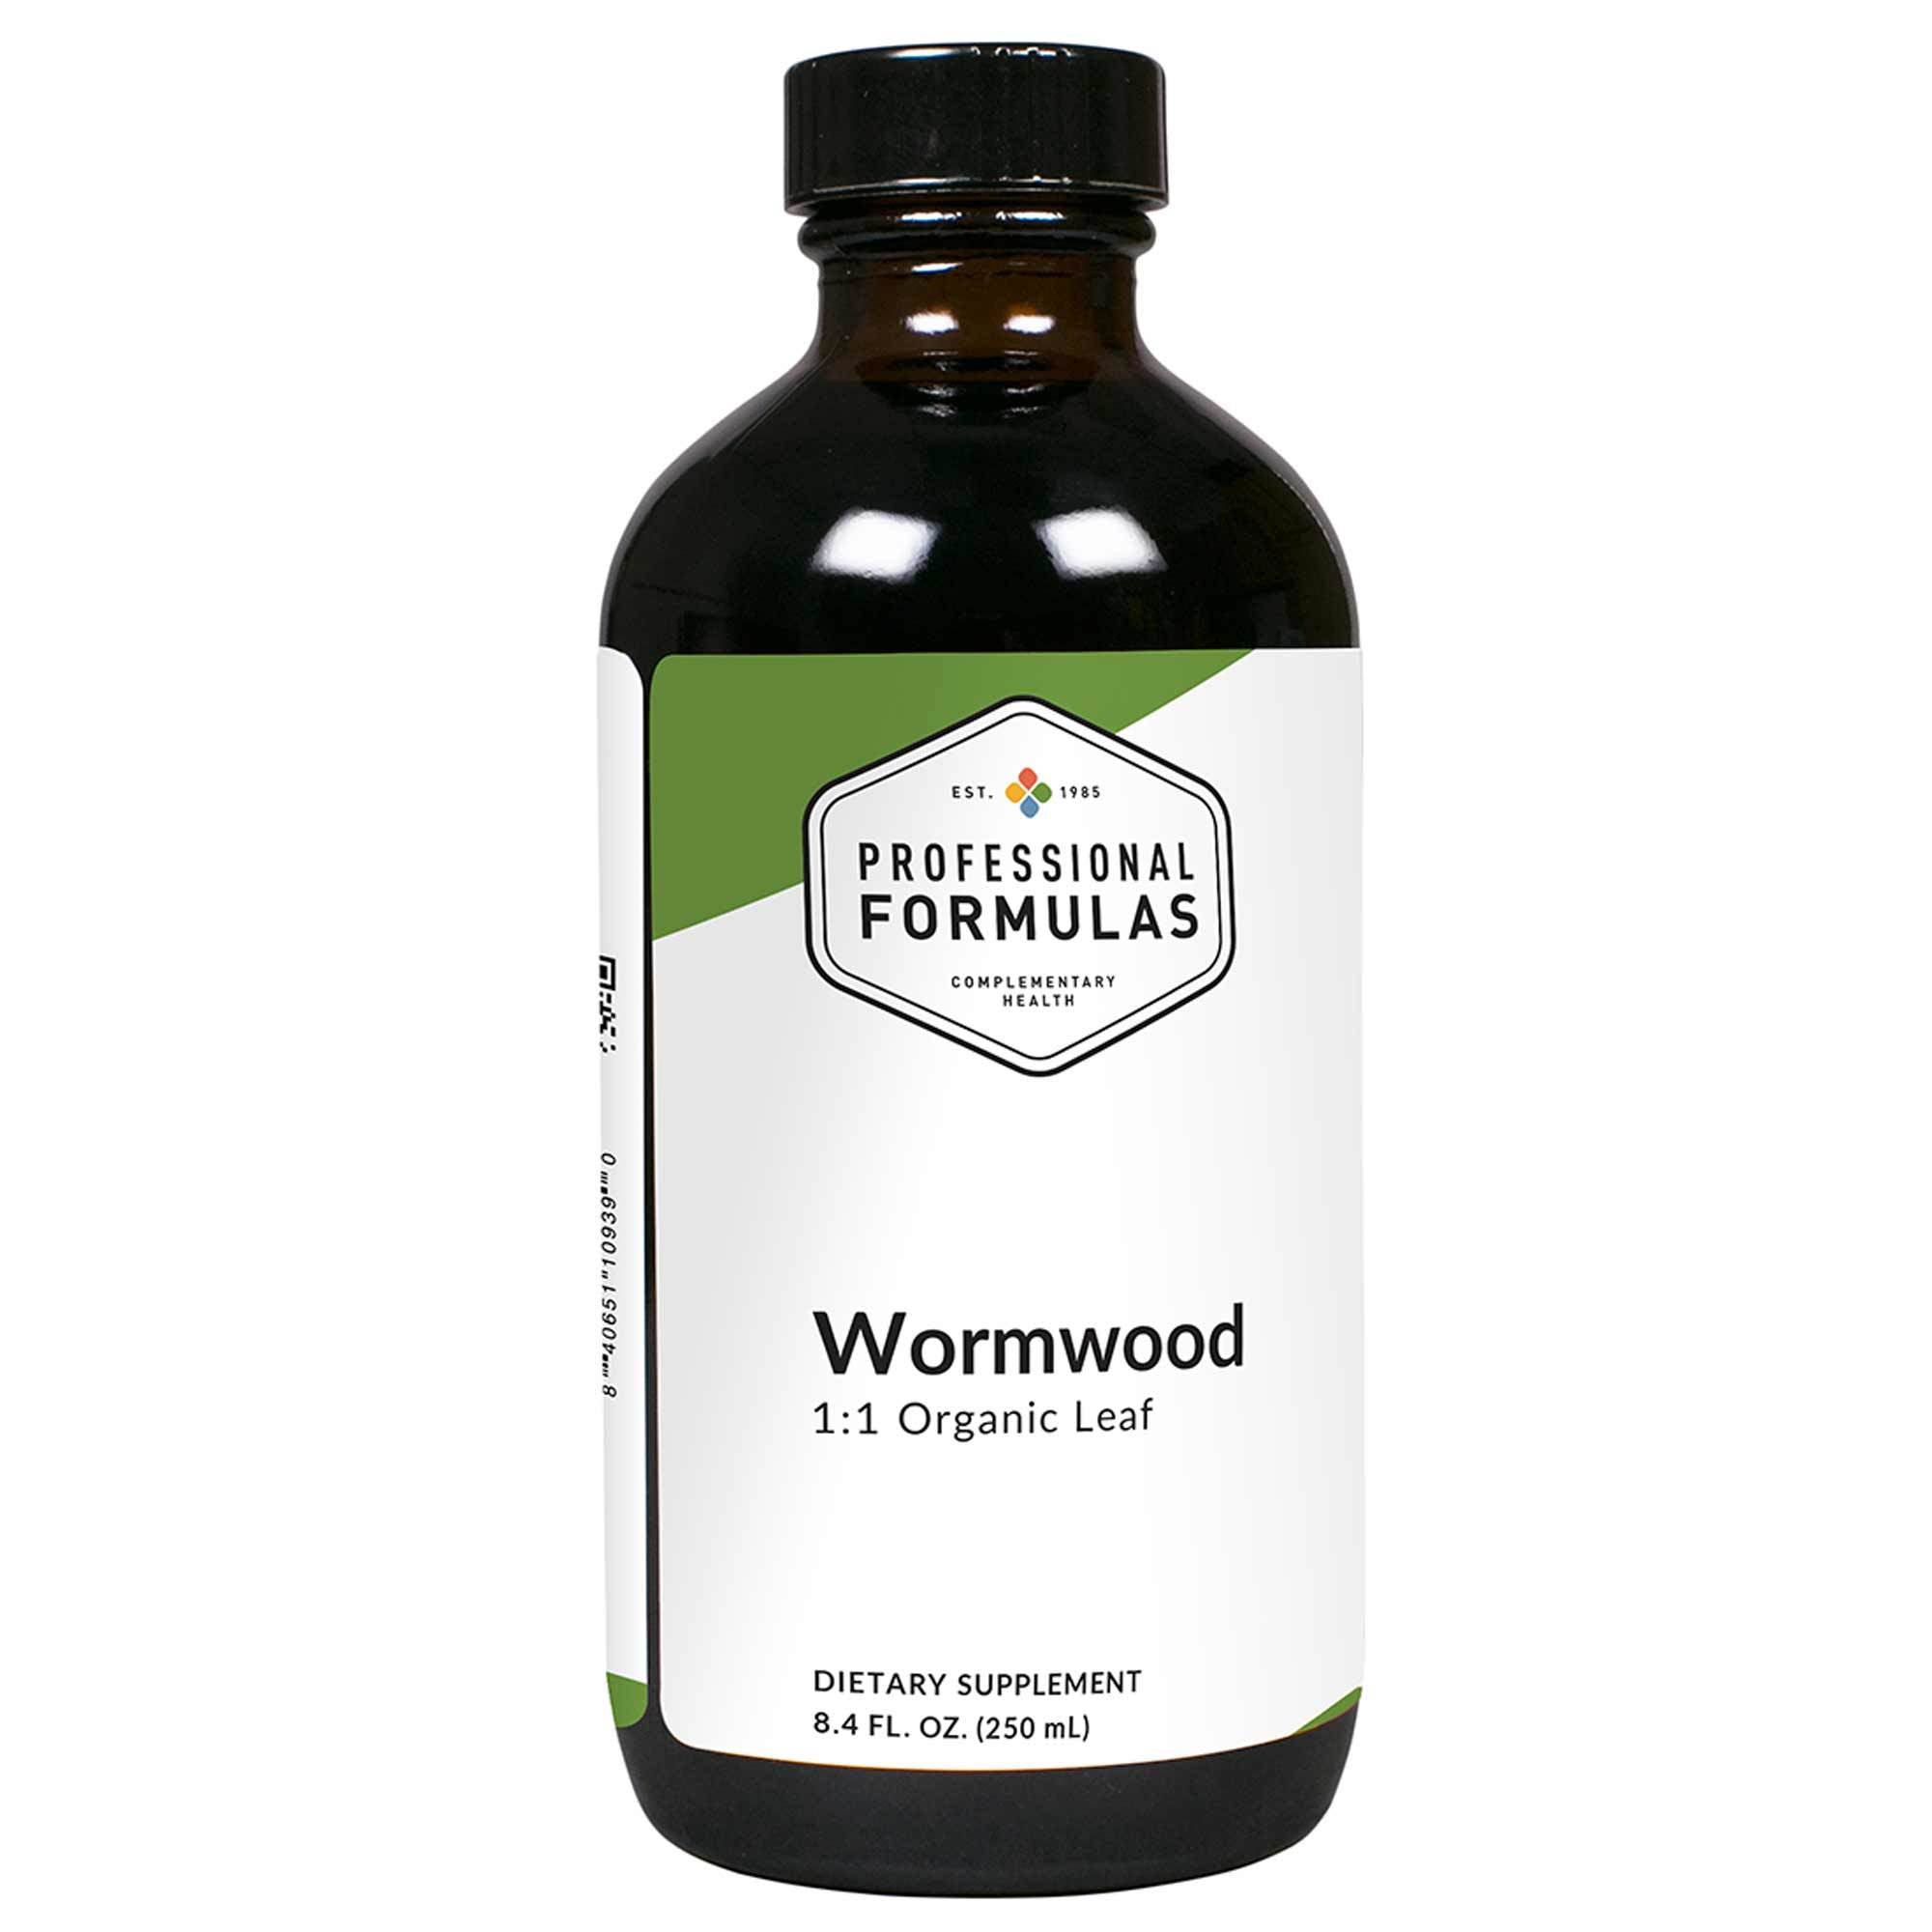 Professional Formulas - Wormwood (Artemisia absinthium) - 8.4 FL. OZ. (250 mL)